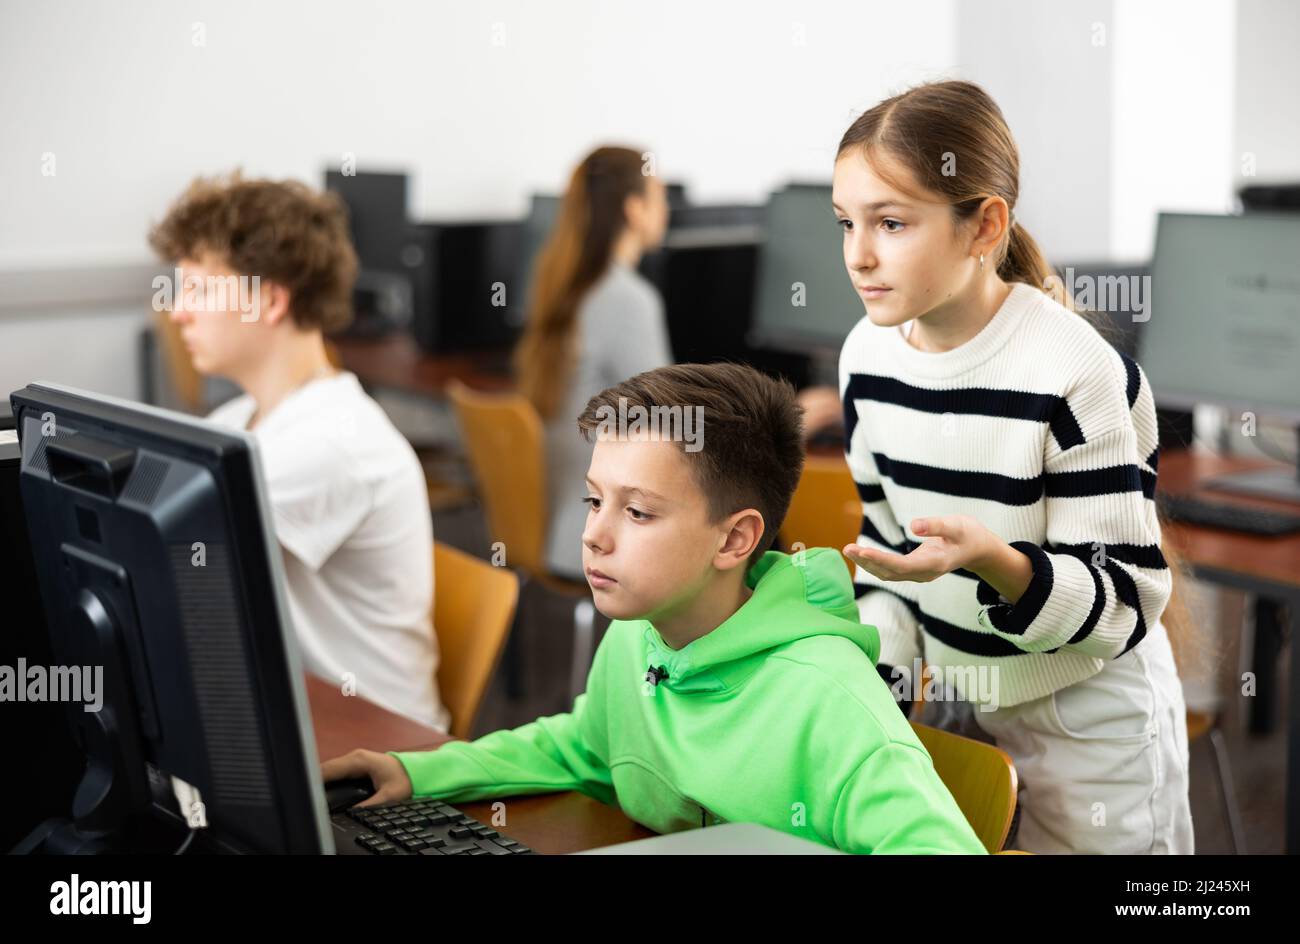 Una niña adolescente ayudando a un compañero de clase enfocado sentado en la computadora en clase Foto de stock